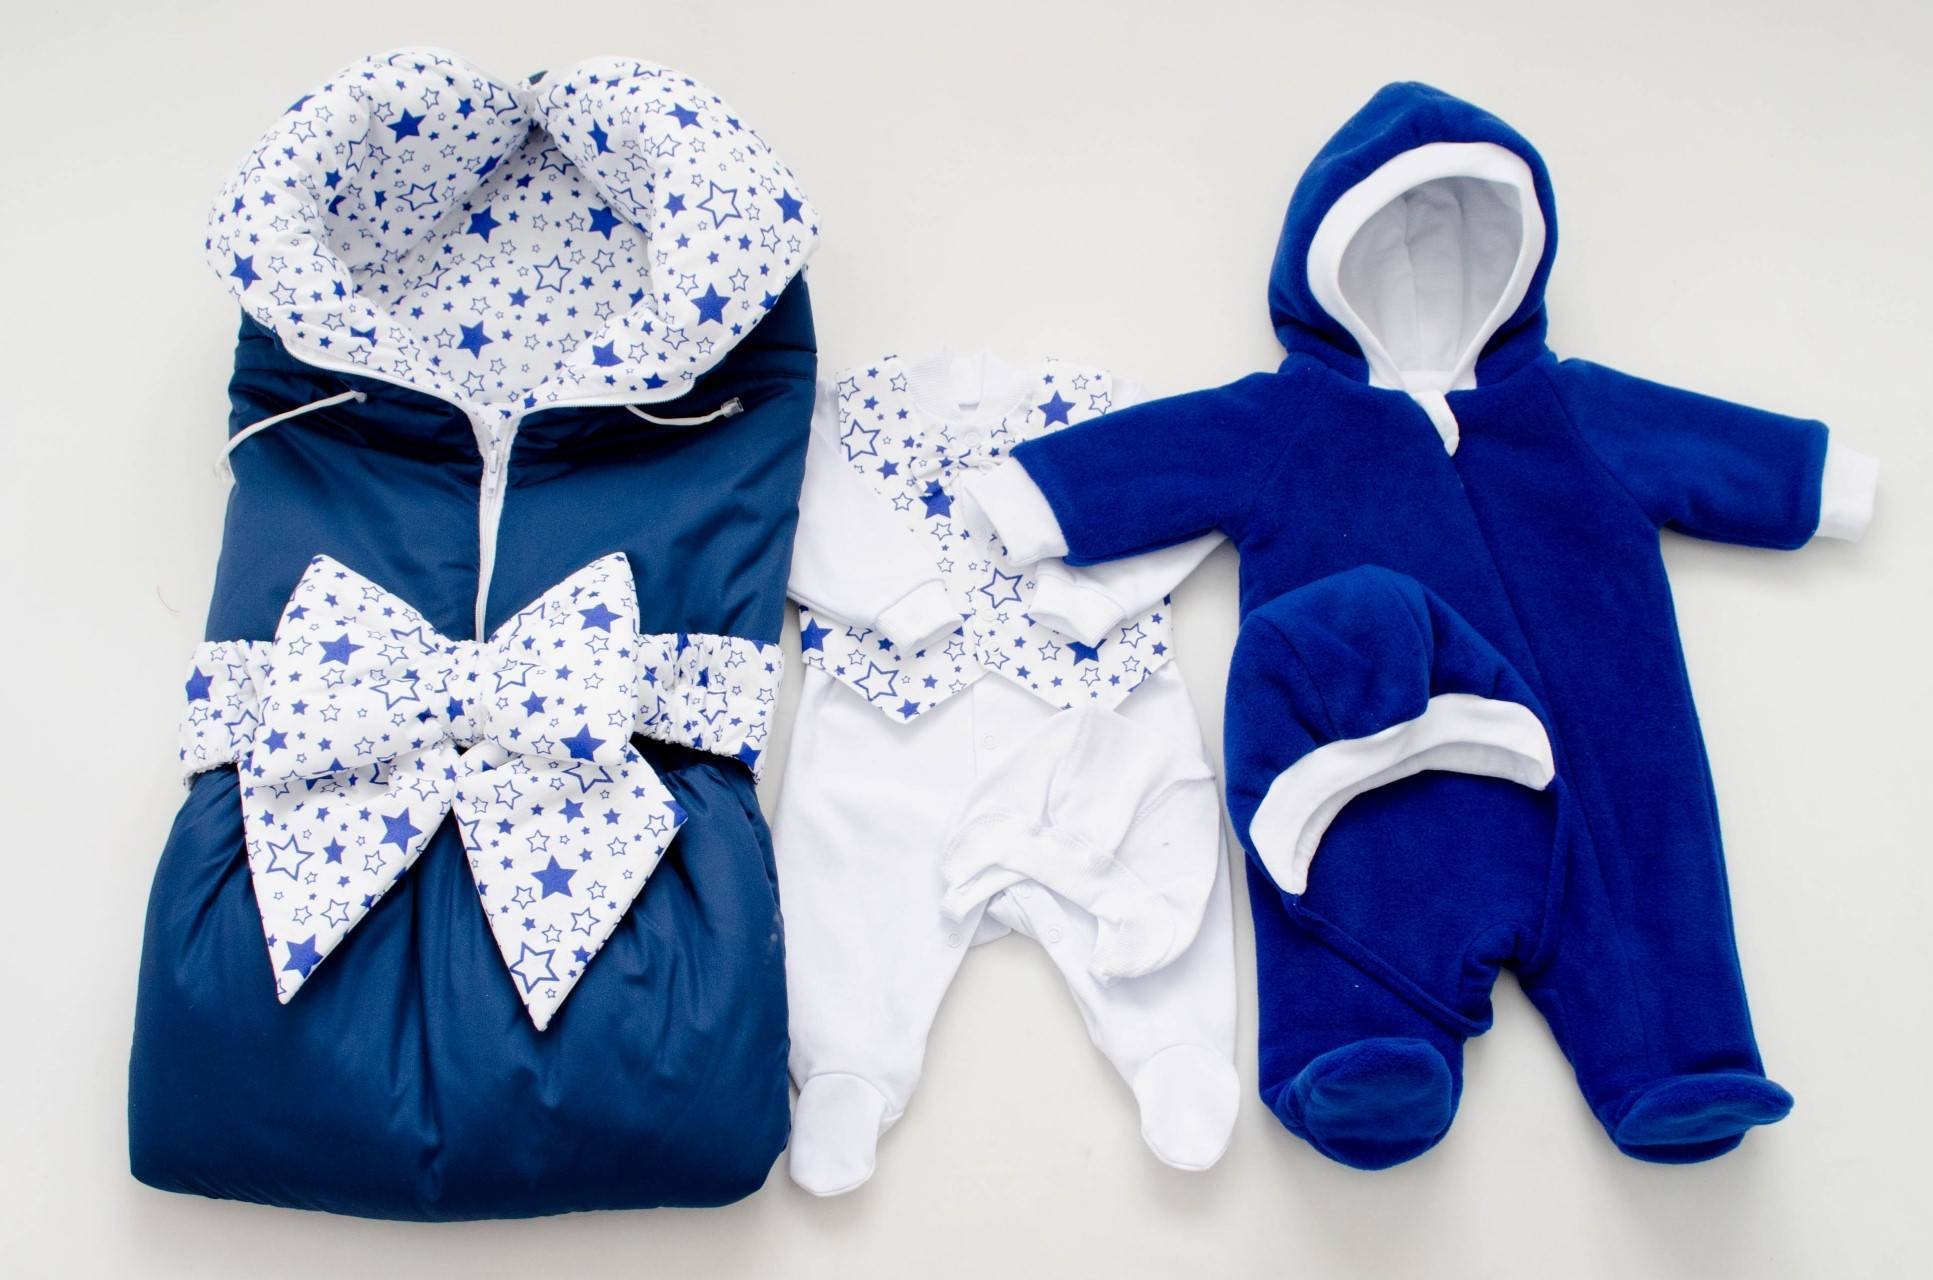 Купить костюм новорожденному. Одежда для новорожденных. Одежда на выписку для новорожденных. Одежда для выписки из роддома. Комплект для новорожденного мальчика.